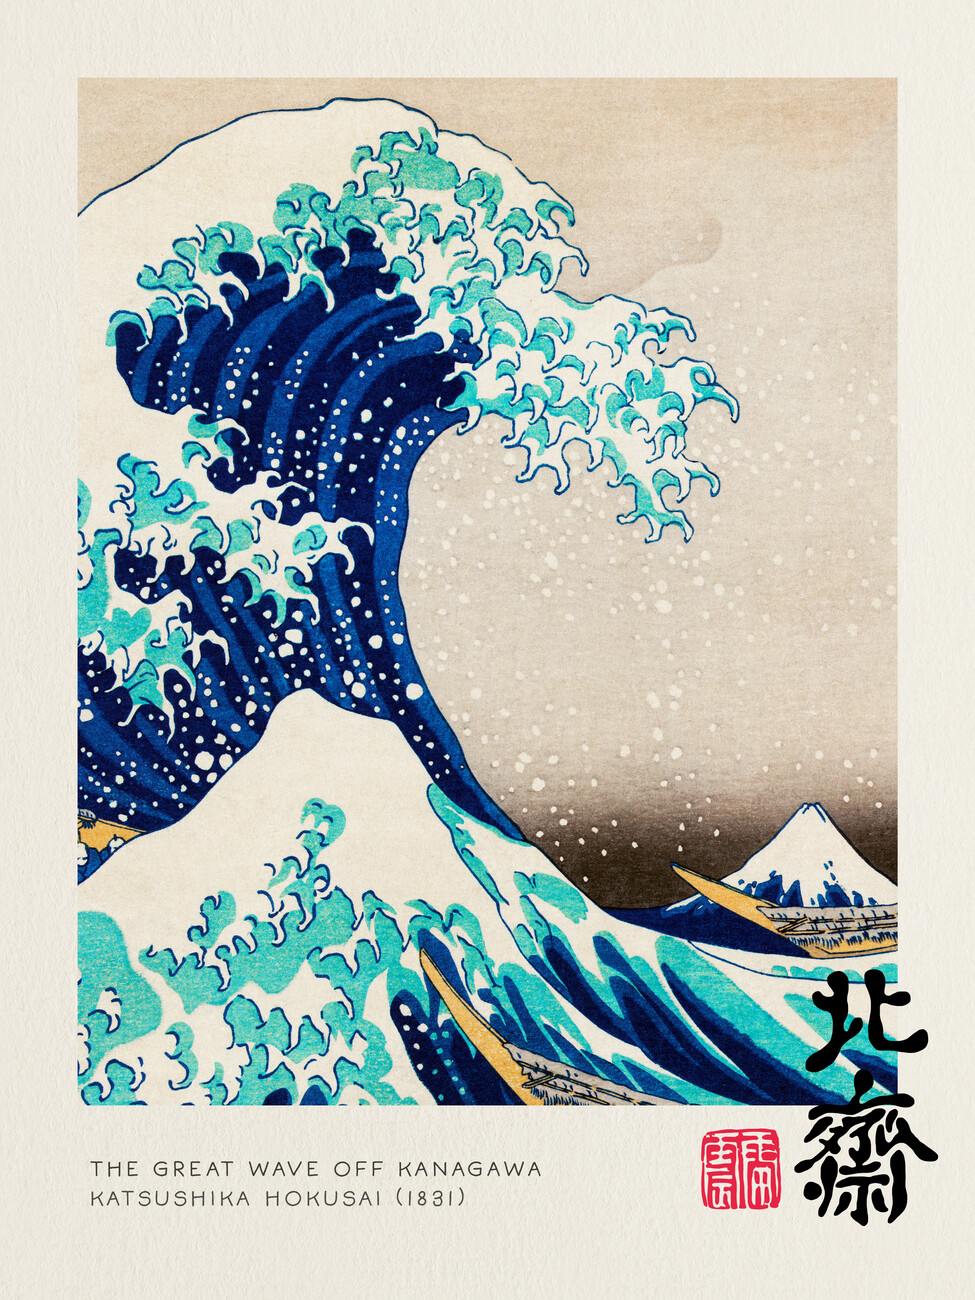 Reprodução do quadro The Great Wave Off Kanagawa - Katsushika Hokusai